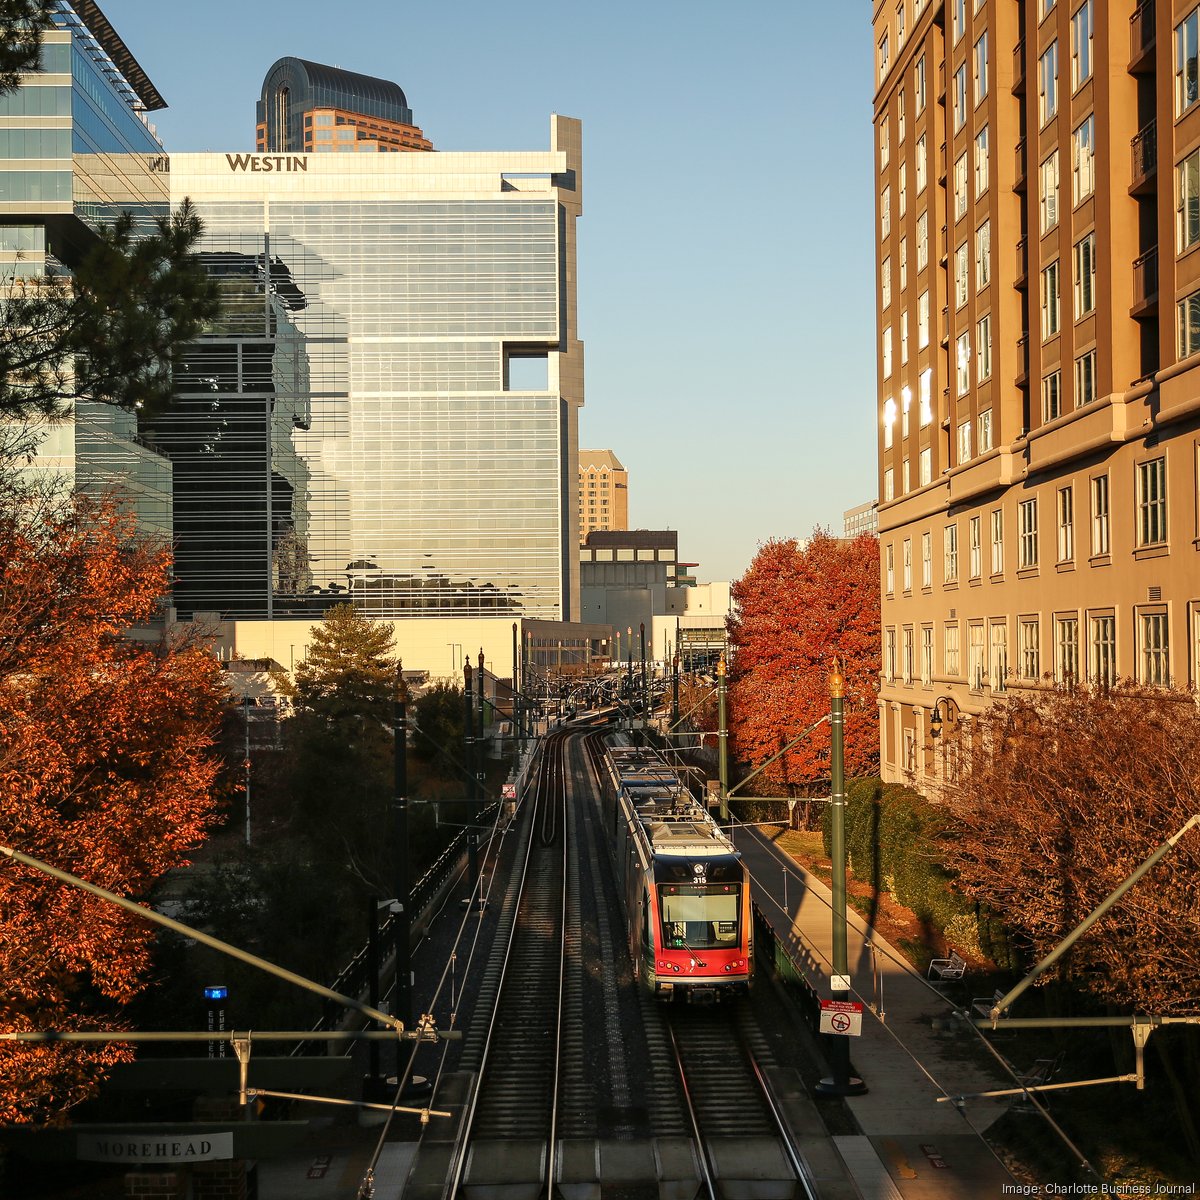 Rail Trail - City of Charlotte